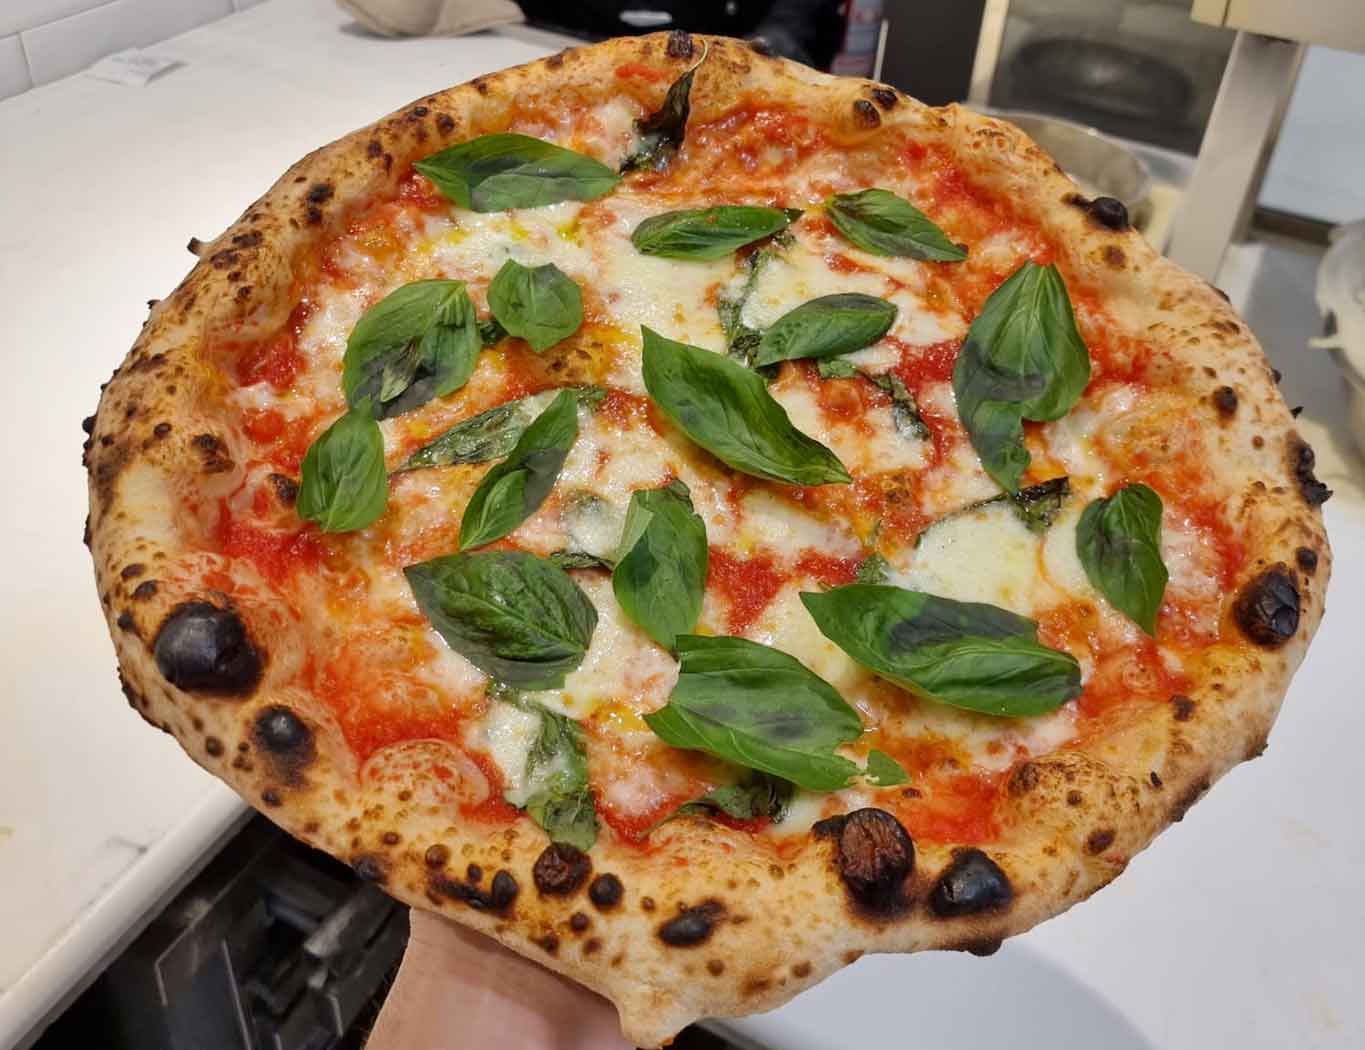 pizza-margherita-tradizionale-a-8-e,-canotto-a-6-e:-lioniello-spiega-i-prezzi